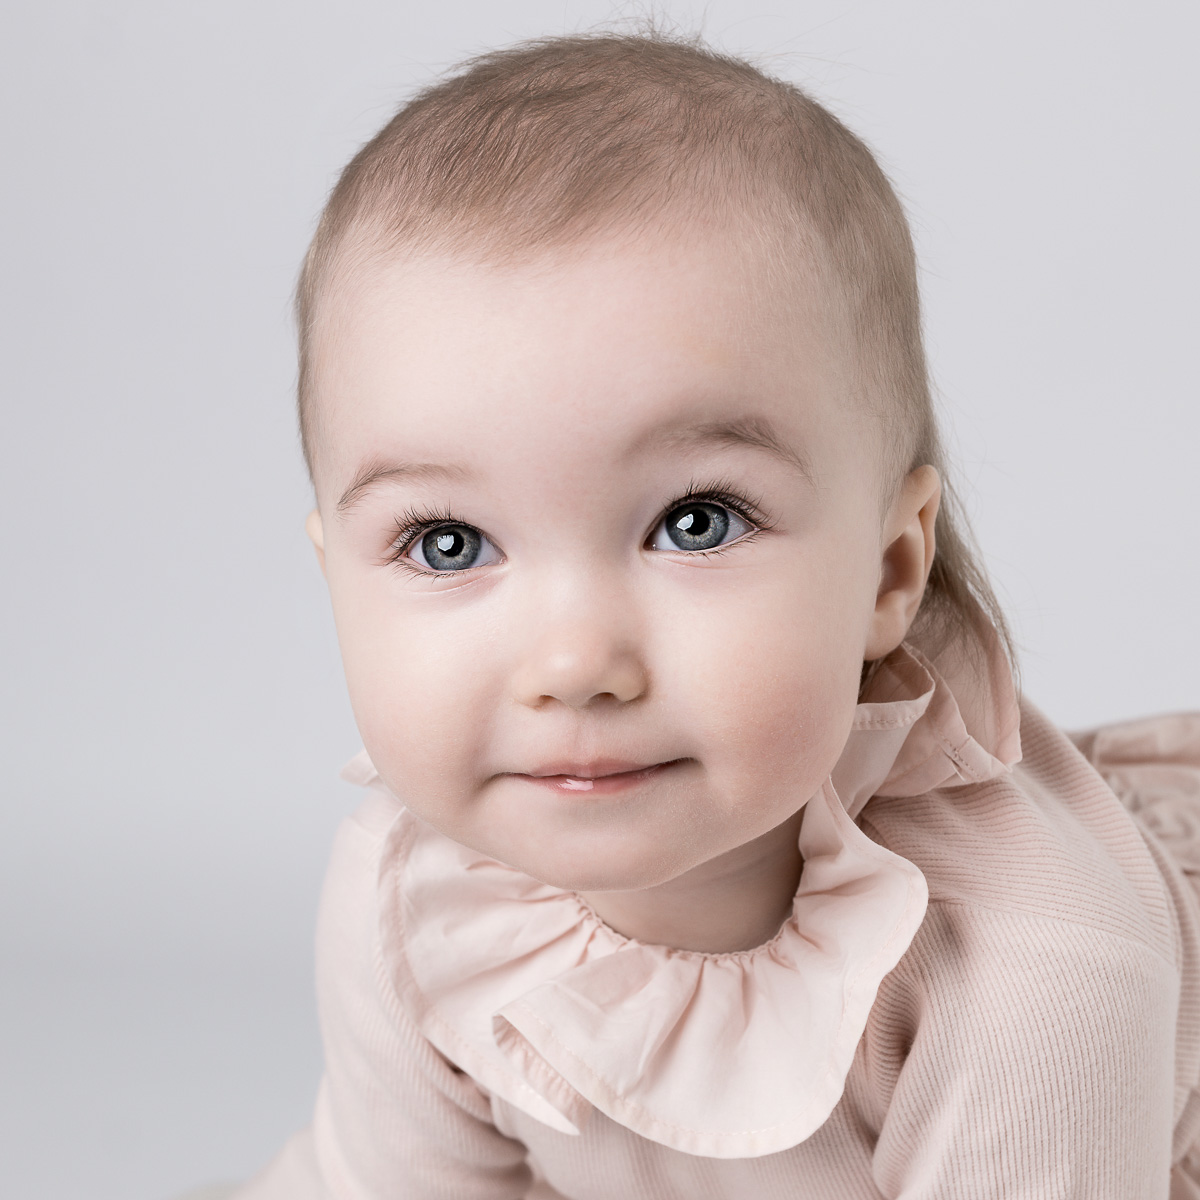 BABYFOTOGRAFERING I STUDIO, babyfoto 3 månaders, 1-årsfotografering, 1 års foto